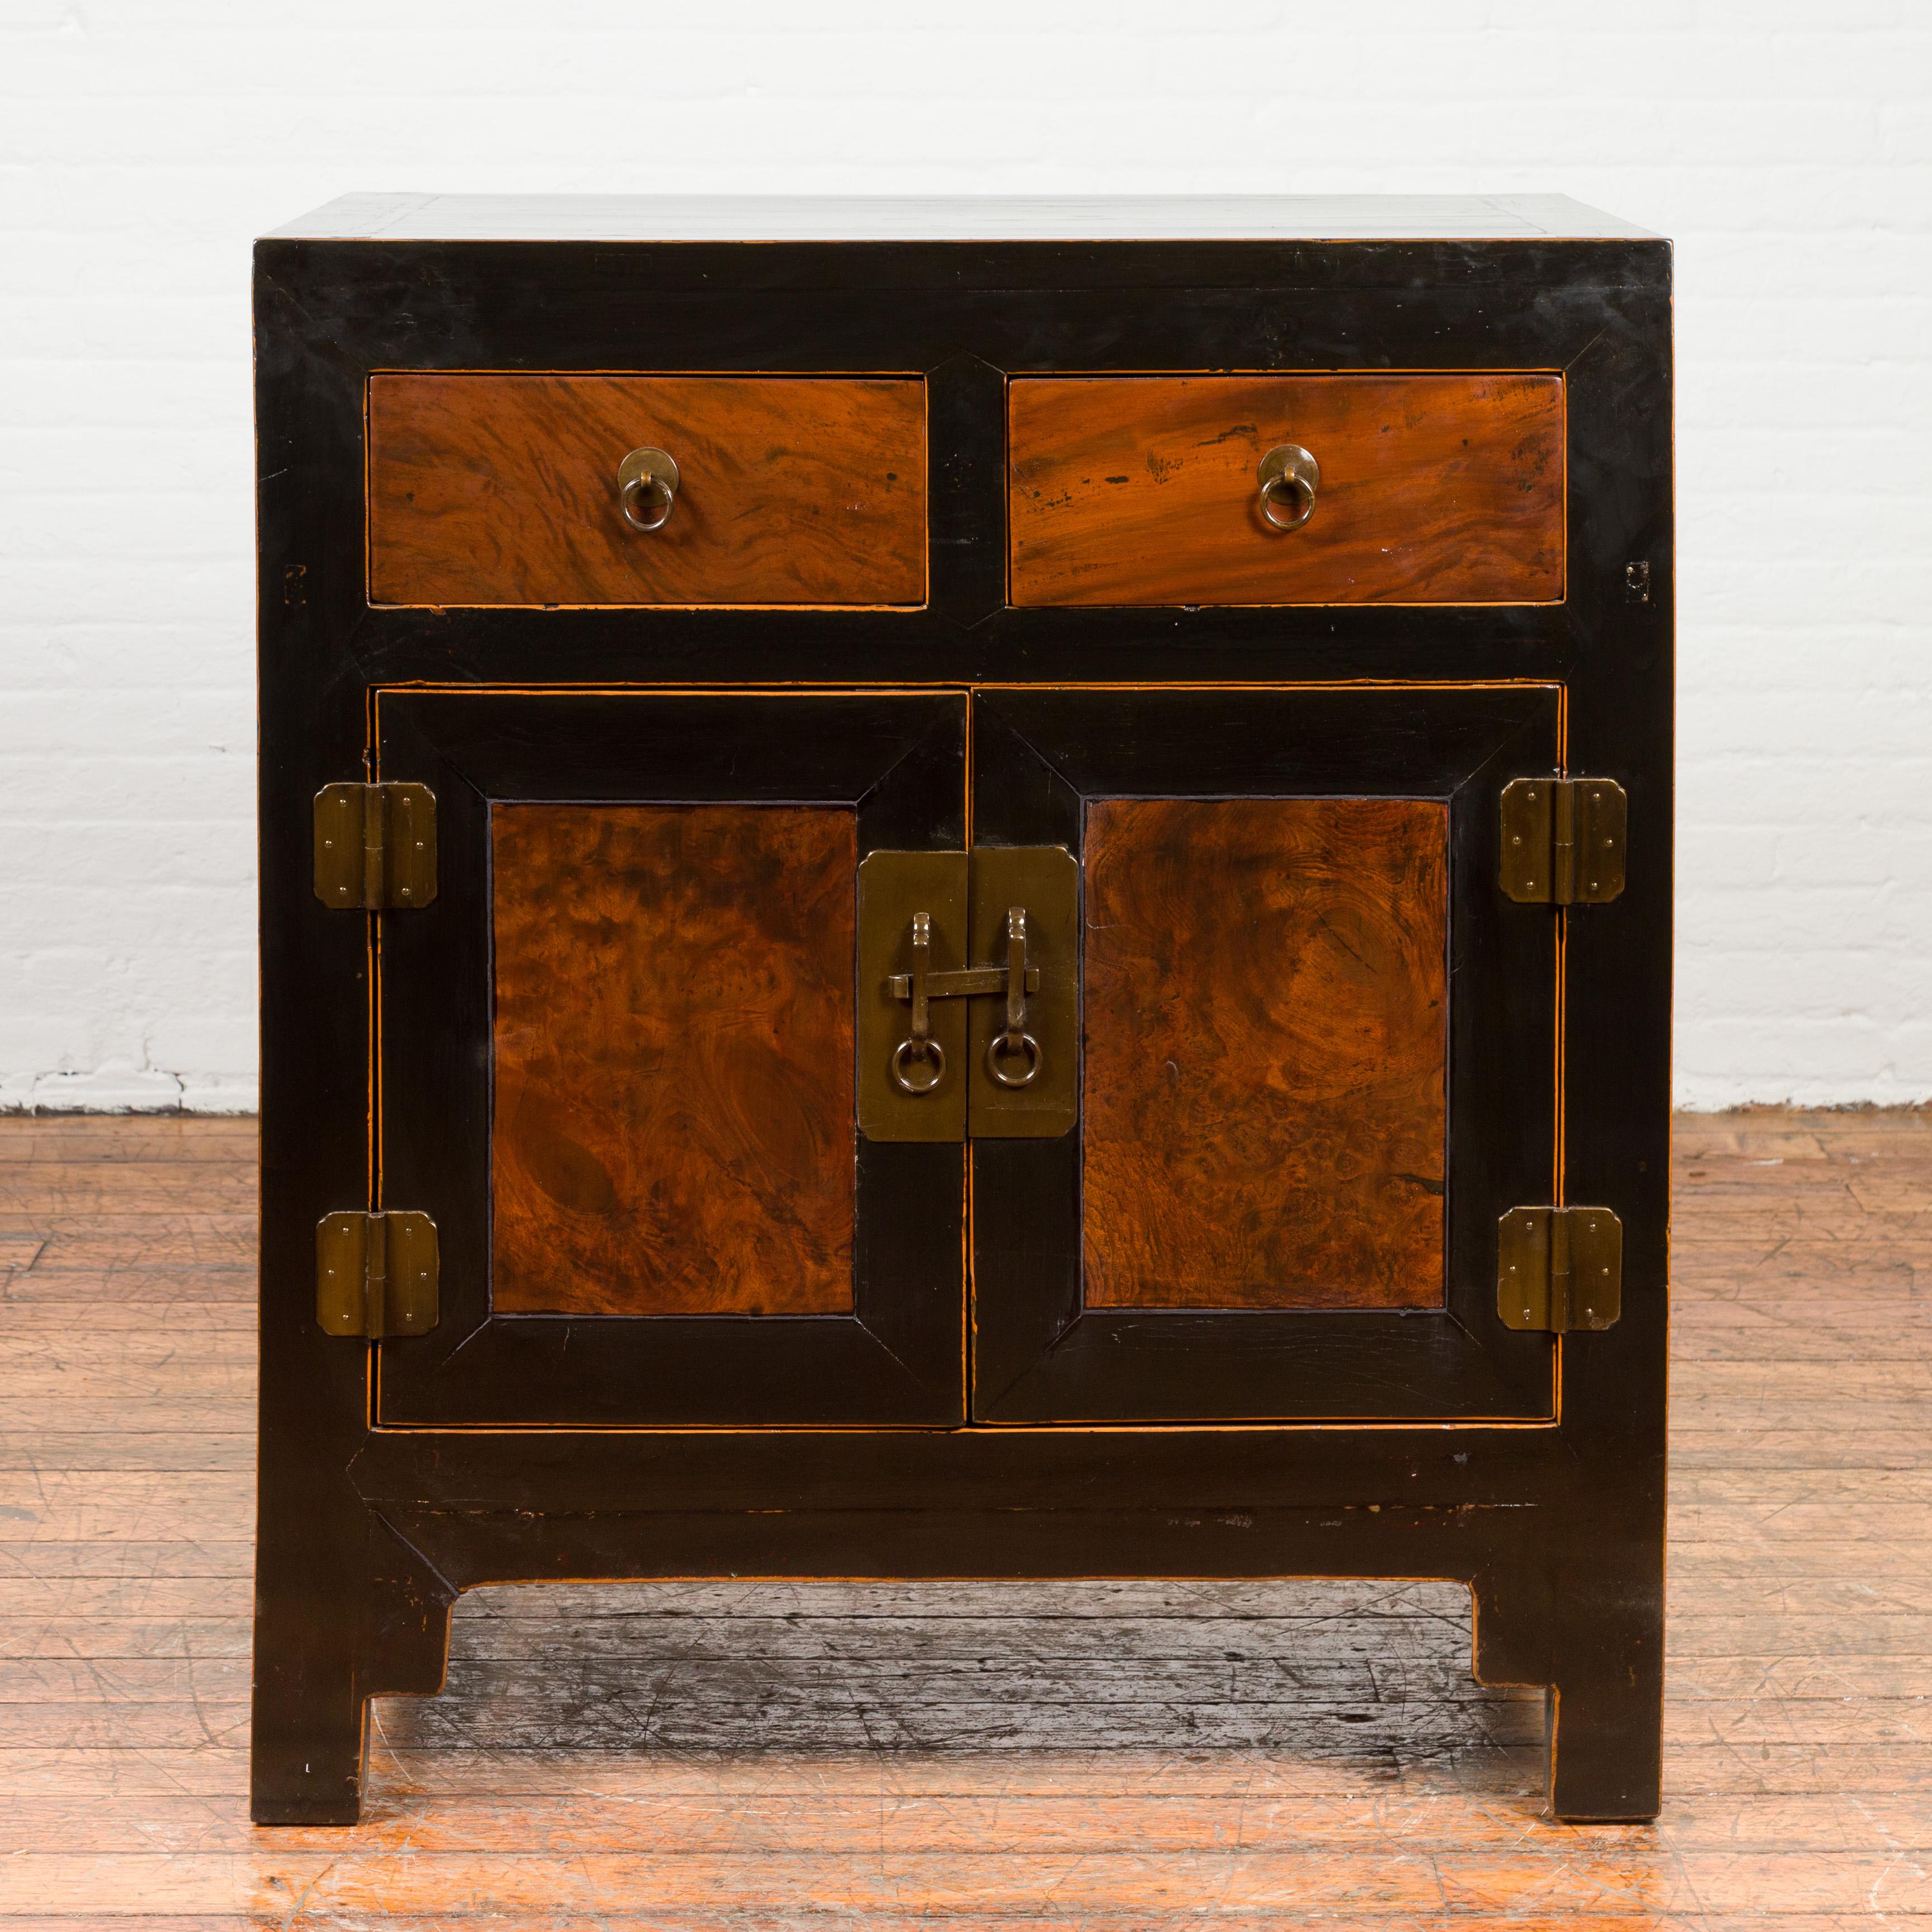 Un meuble bas chinois en laque noire de Hebei du début du 20e siècle, avec des portes et des tiroirs en bois de ronce. Créé dans la province de Hebei, au nord-est du pays, au début du XXe siècle, ce meuble bas présente une silhouette linéaire